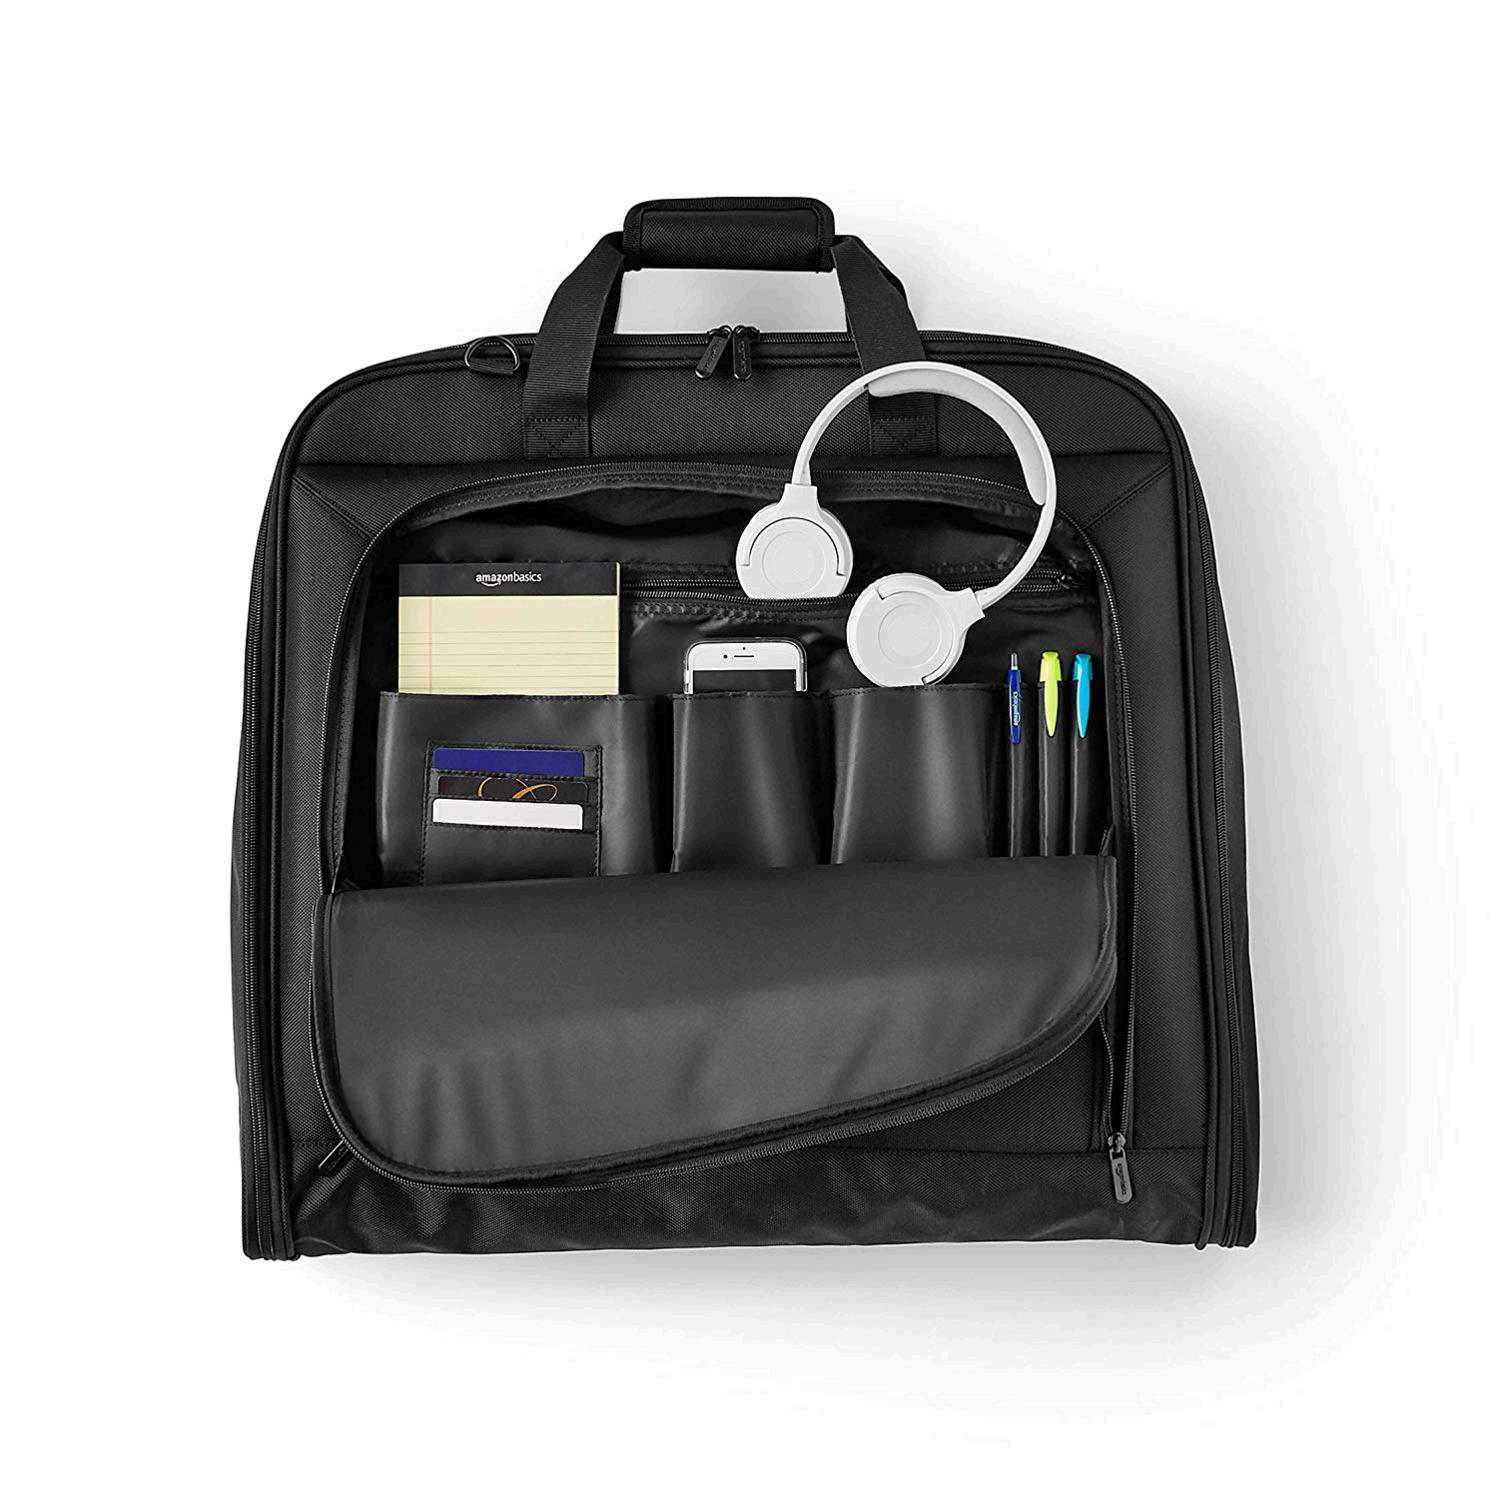 AmazonBasics Premium Travel Hanging Luggage Suit Garment Bag -, Black, Size 40&quot; | eBay